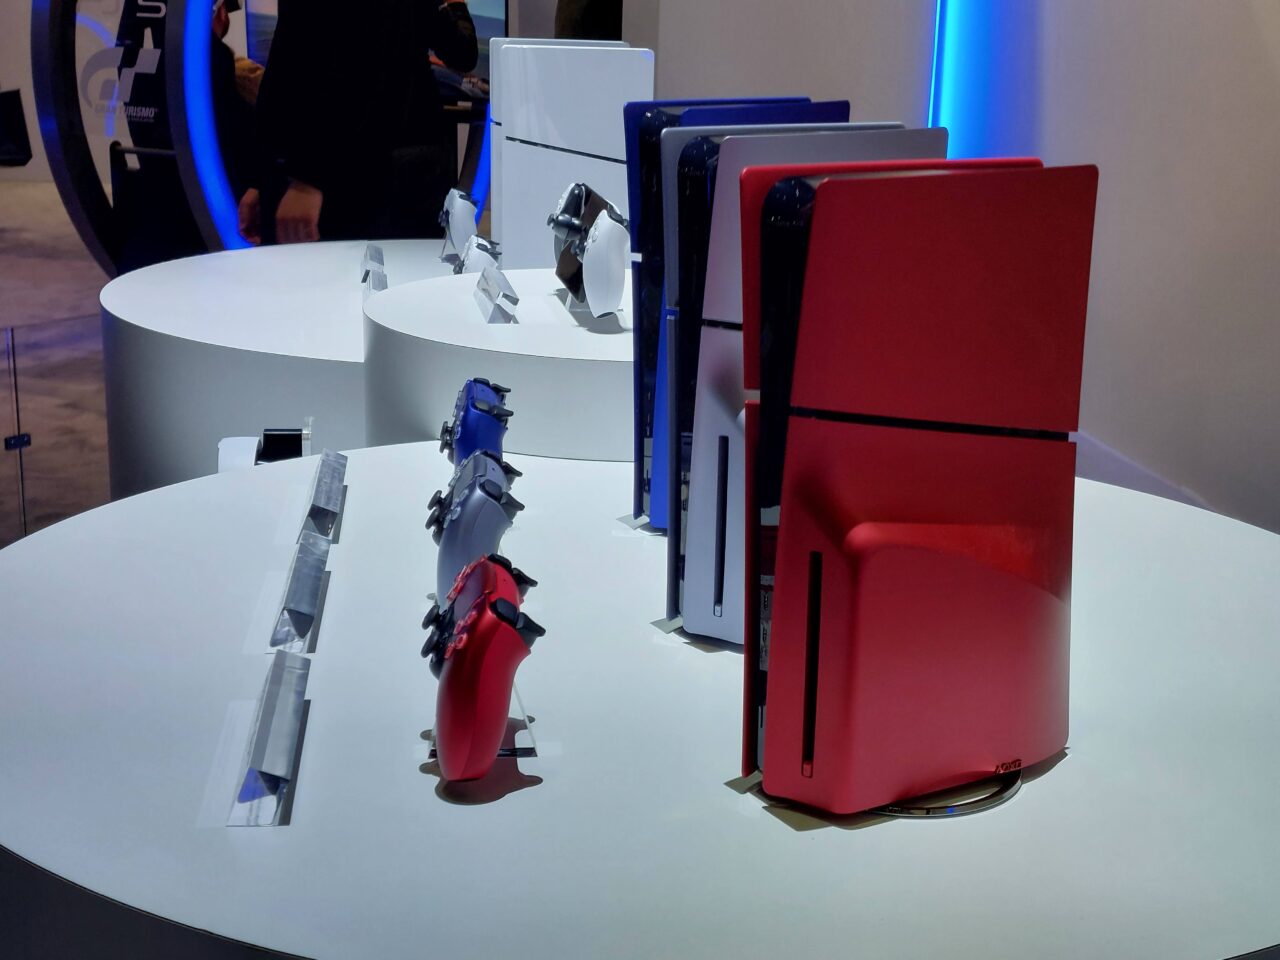 Ekspozycja różnych modeli konsoli do gier PS5 w różnych wersjach kolorystycznych na białym stoliku wystawienniczym.